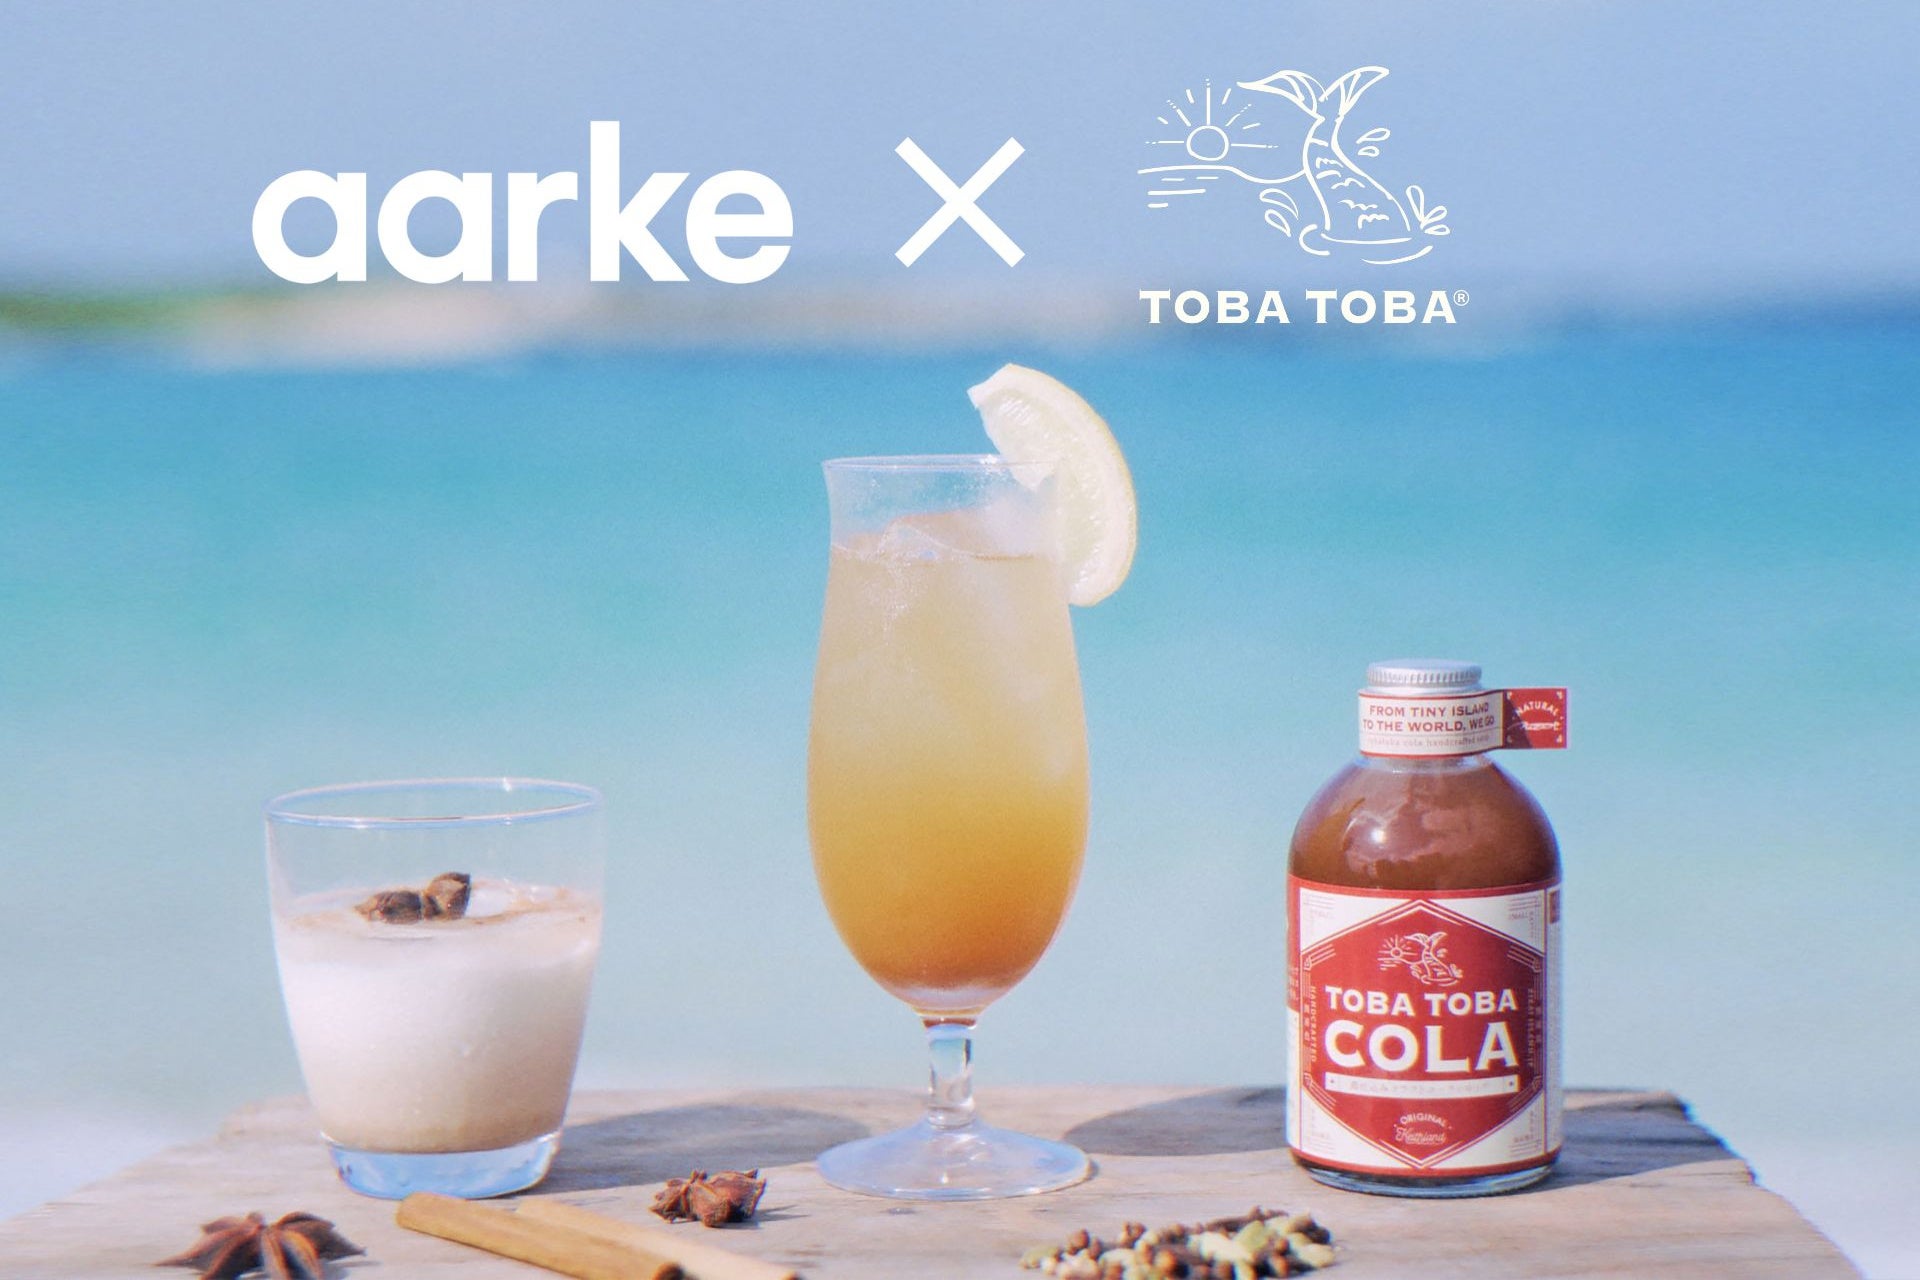 スウェーデン発プレミアムキッチンブランドaarke (アールケ)と、フードロスに取り組む喜界島のコーラシロップがコラボレーション。「aarke x TOBA TOBA COLA」キャンペーンを開催。